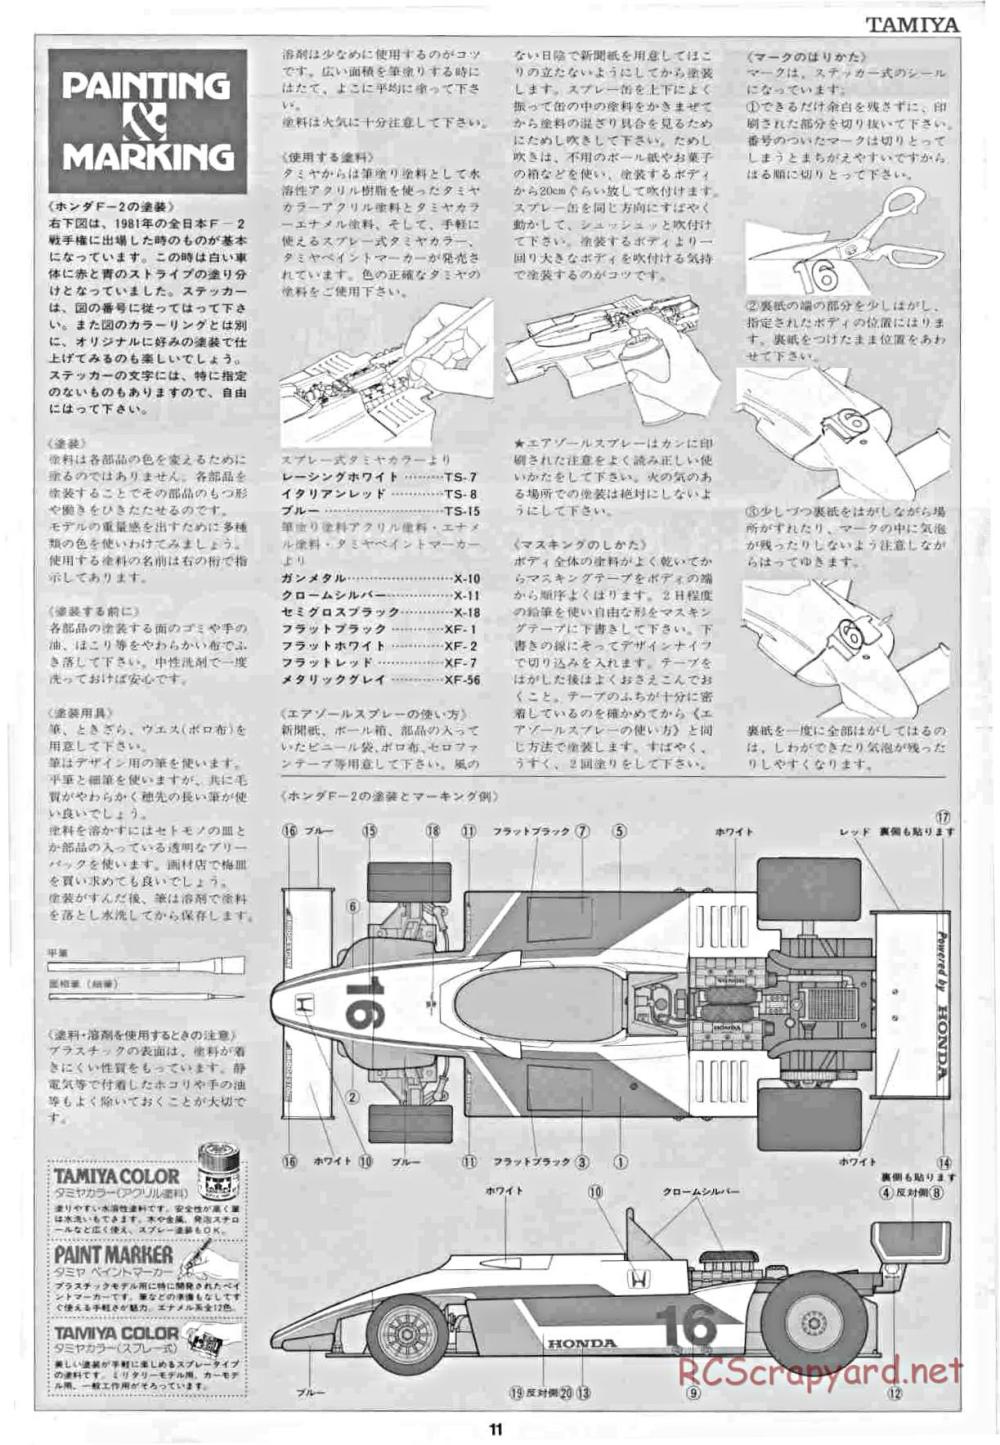 Tamiya - Honda F2 (CS) - 58030 - Manual - Page 11